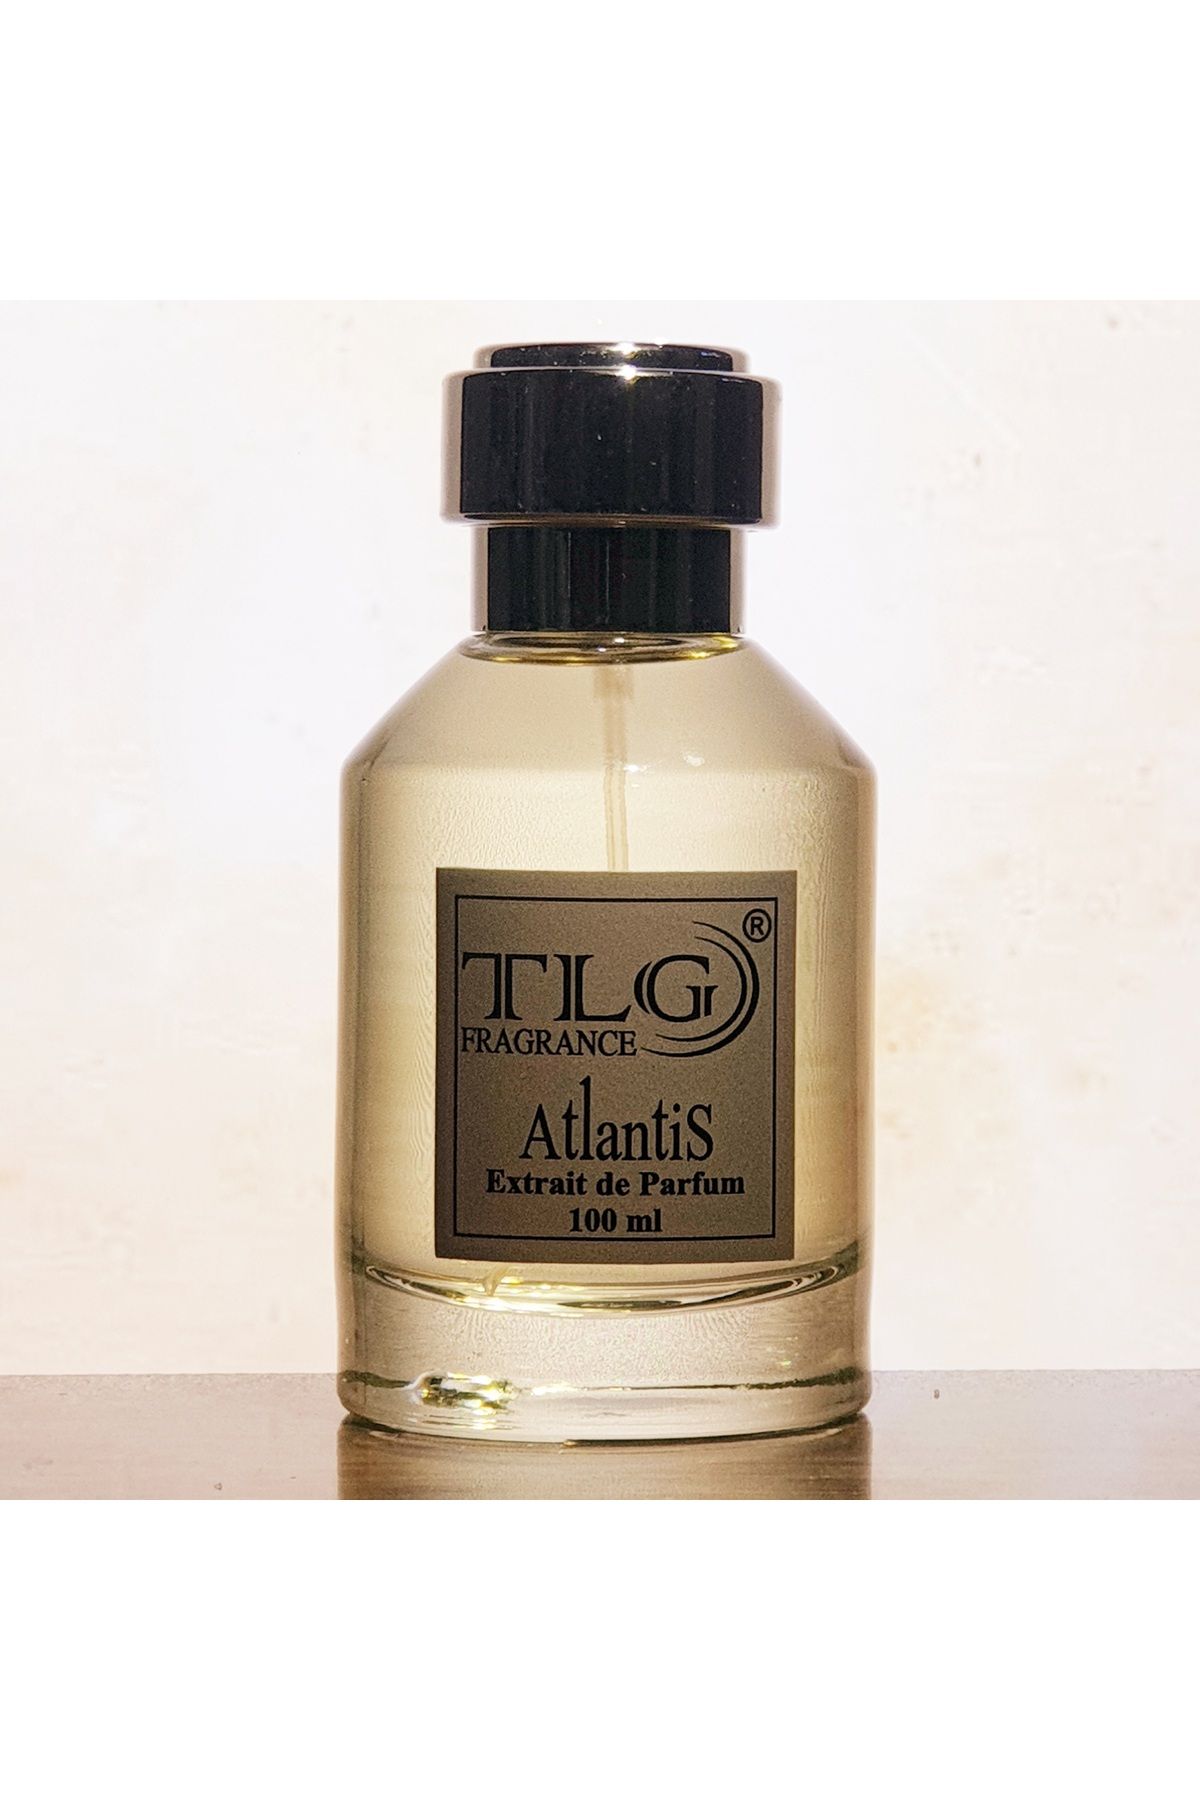 TLG TLGNM022B - TLG Atlantis Extrait de Parfum, 100 ml (LUNA ROSSA CARBON)